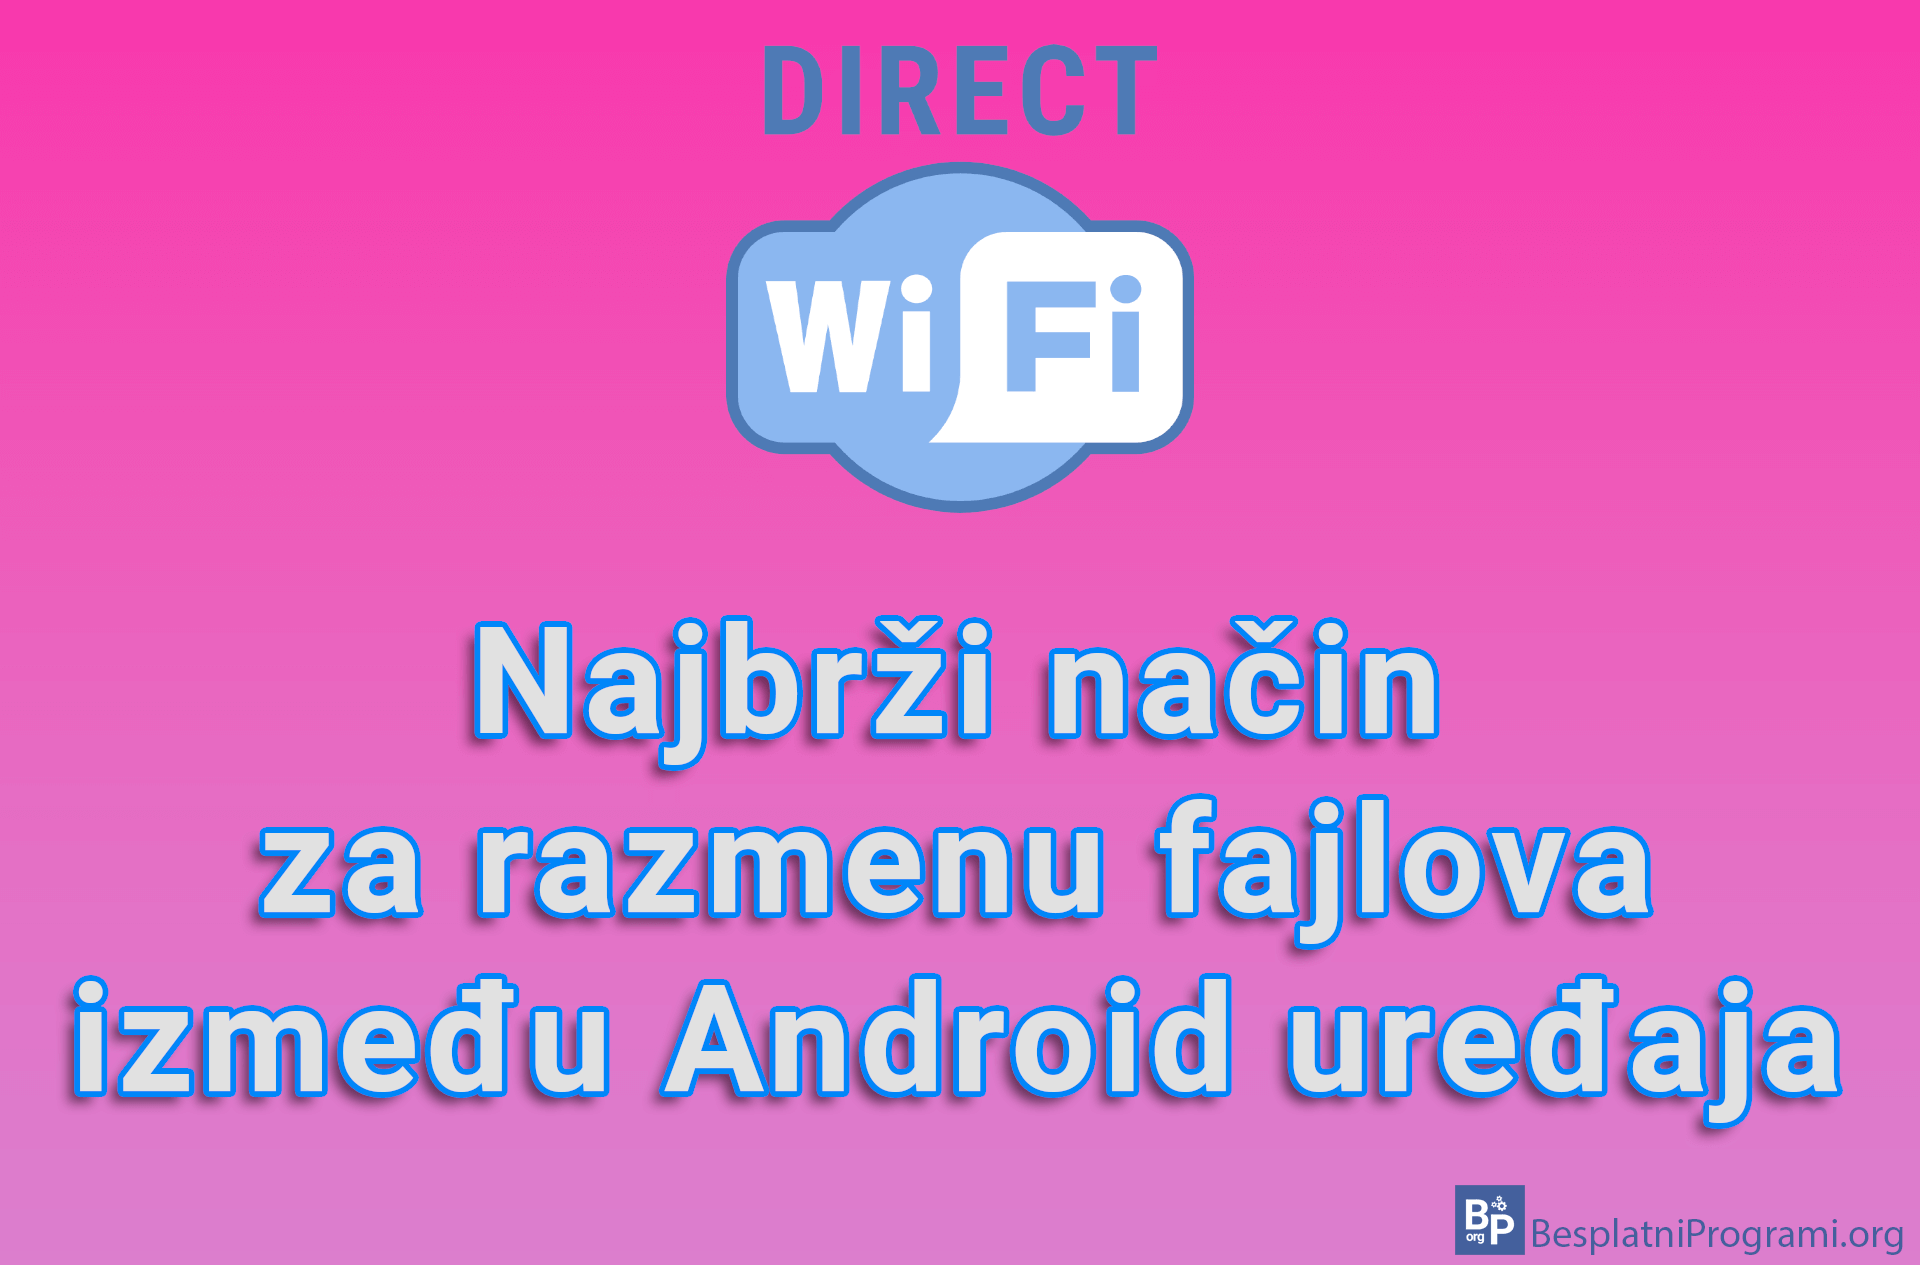 Wi-Fi Direct - Najbrži način za razmenu fajlova između Android uređaja